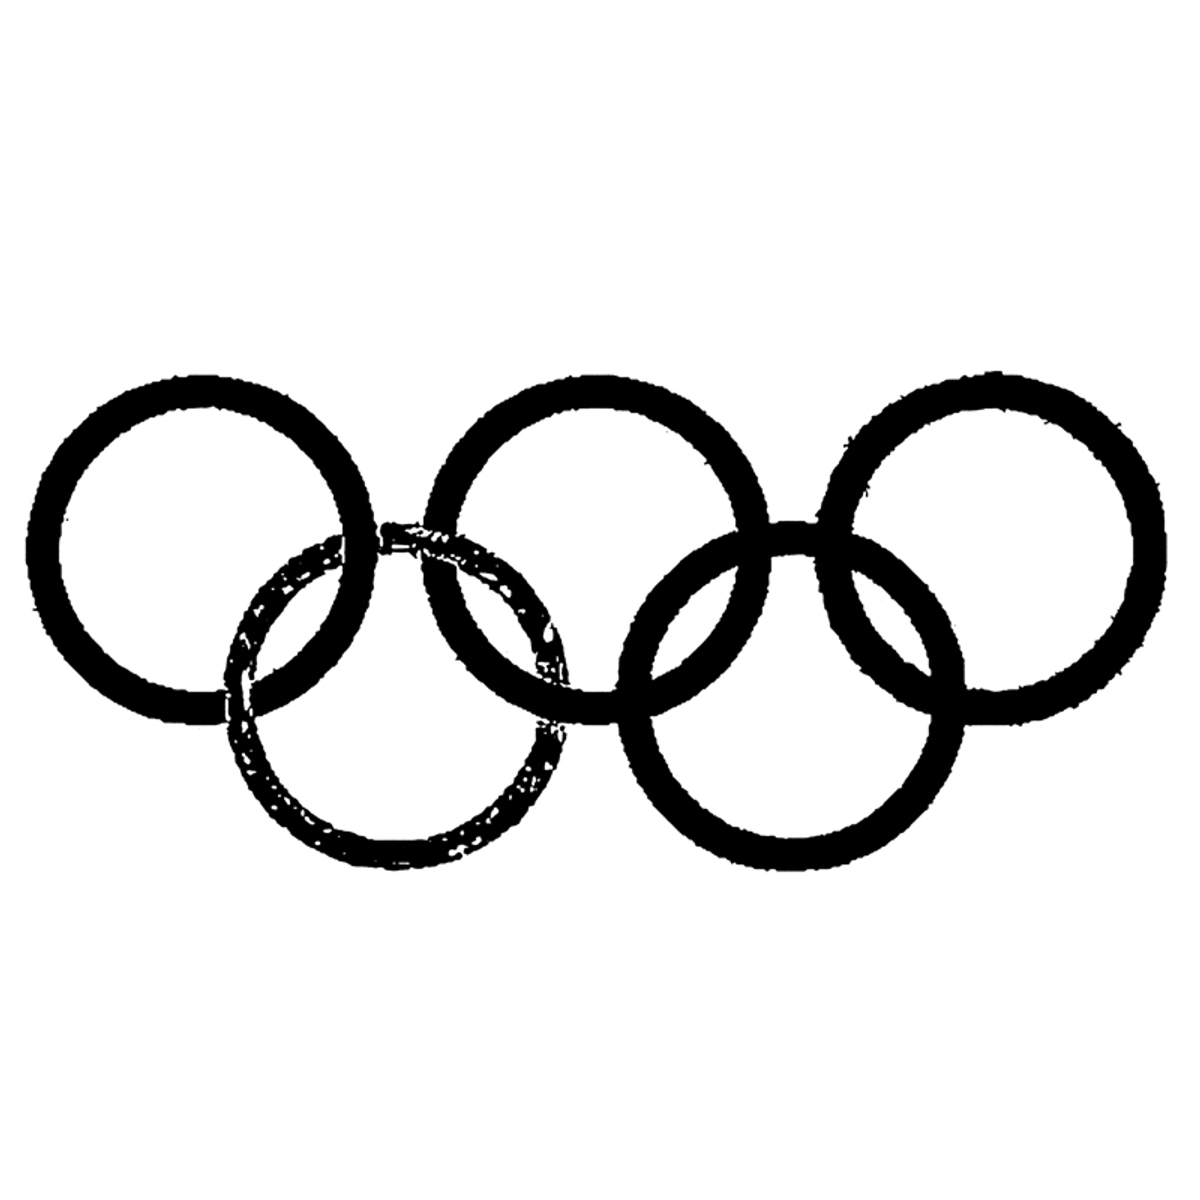 1914, création des anneaux olympiques